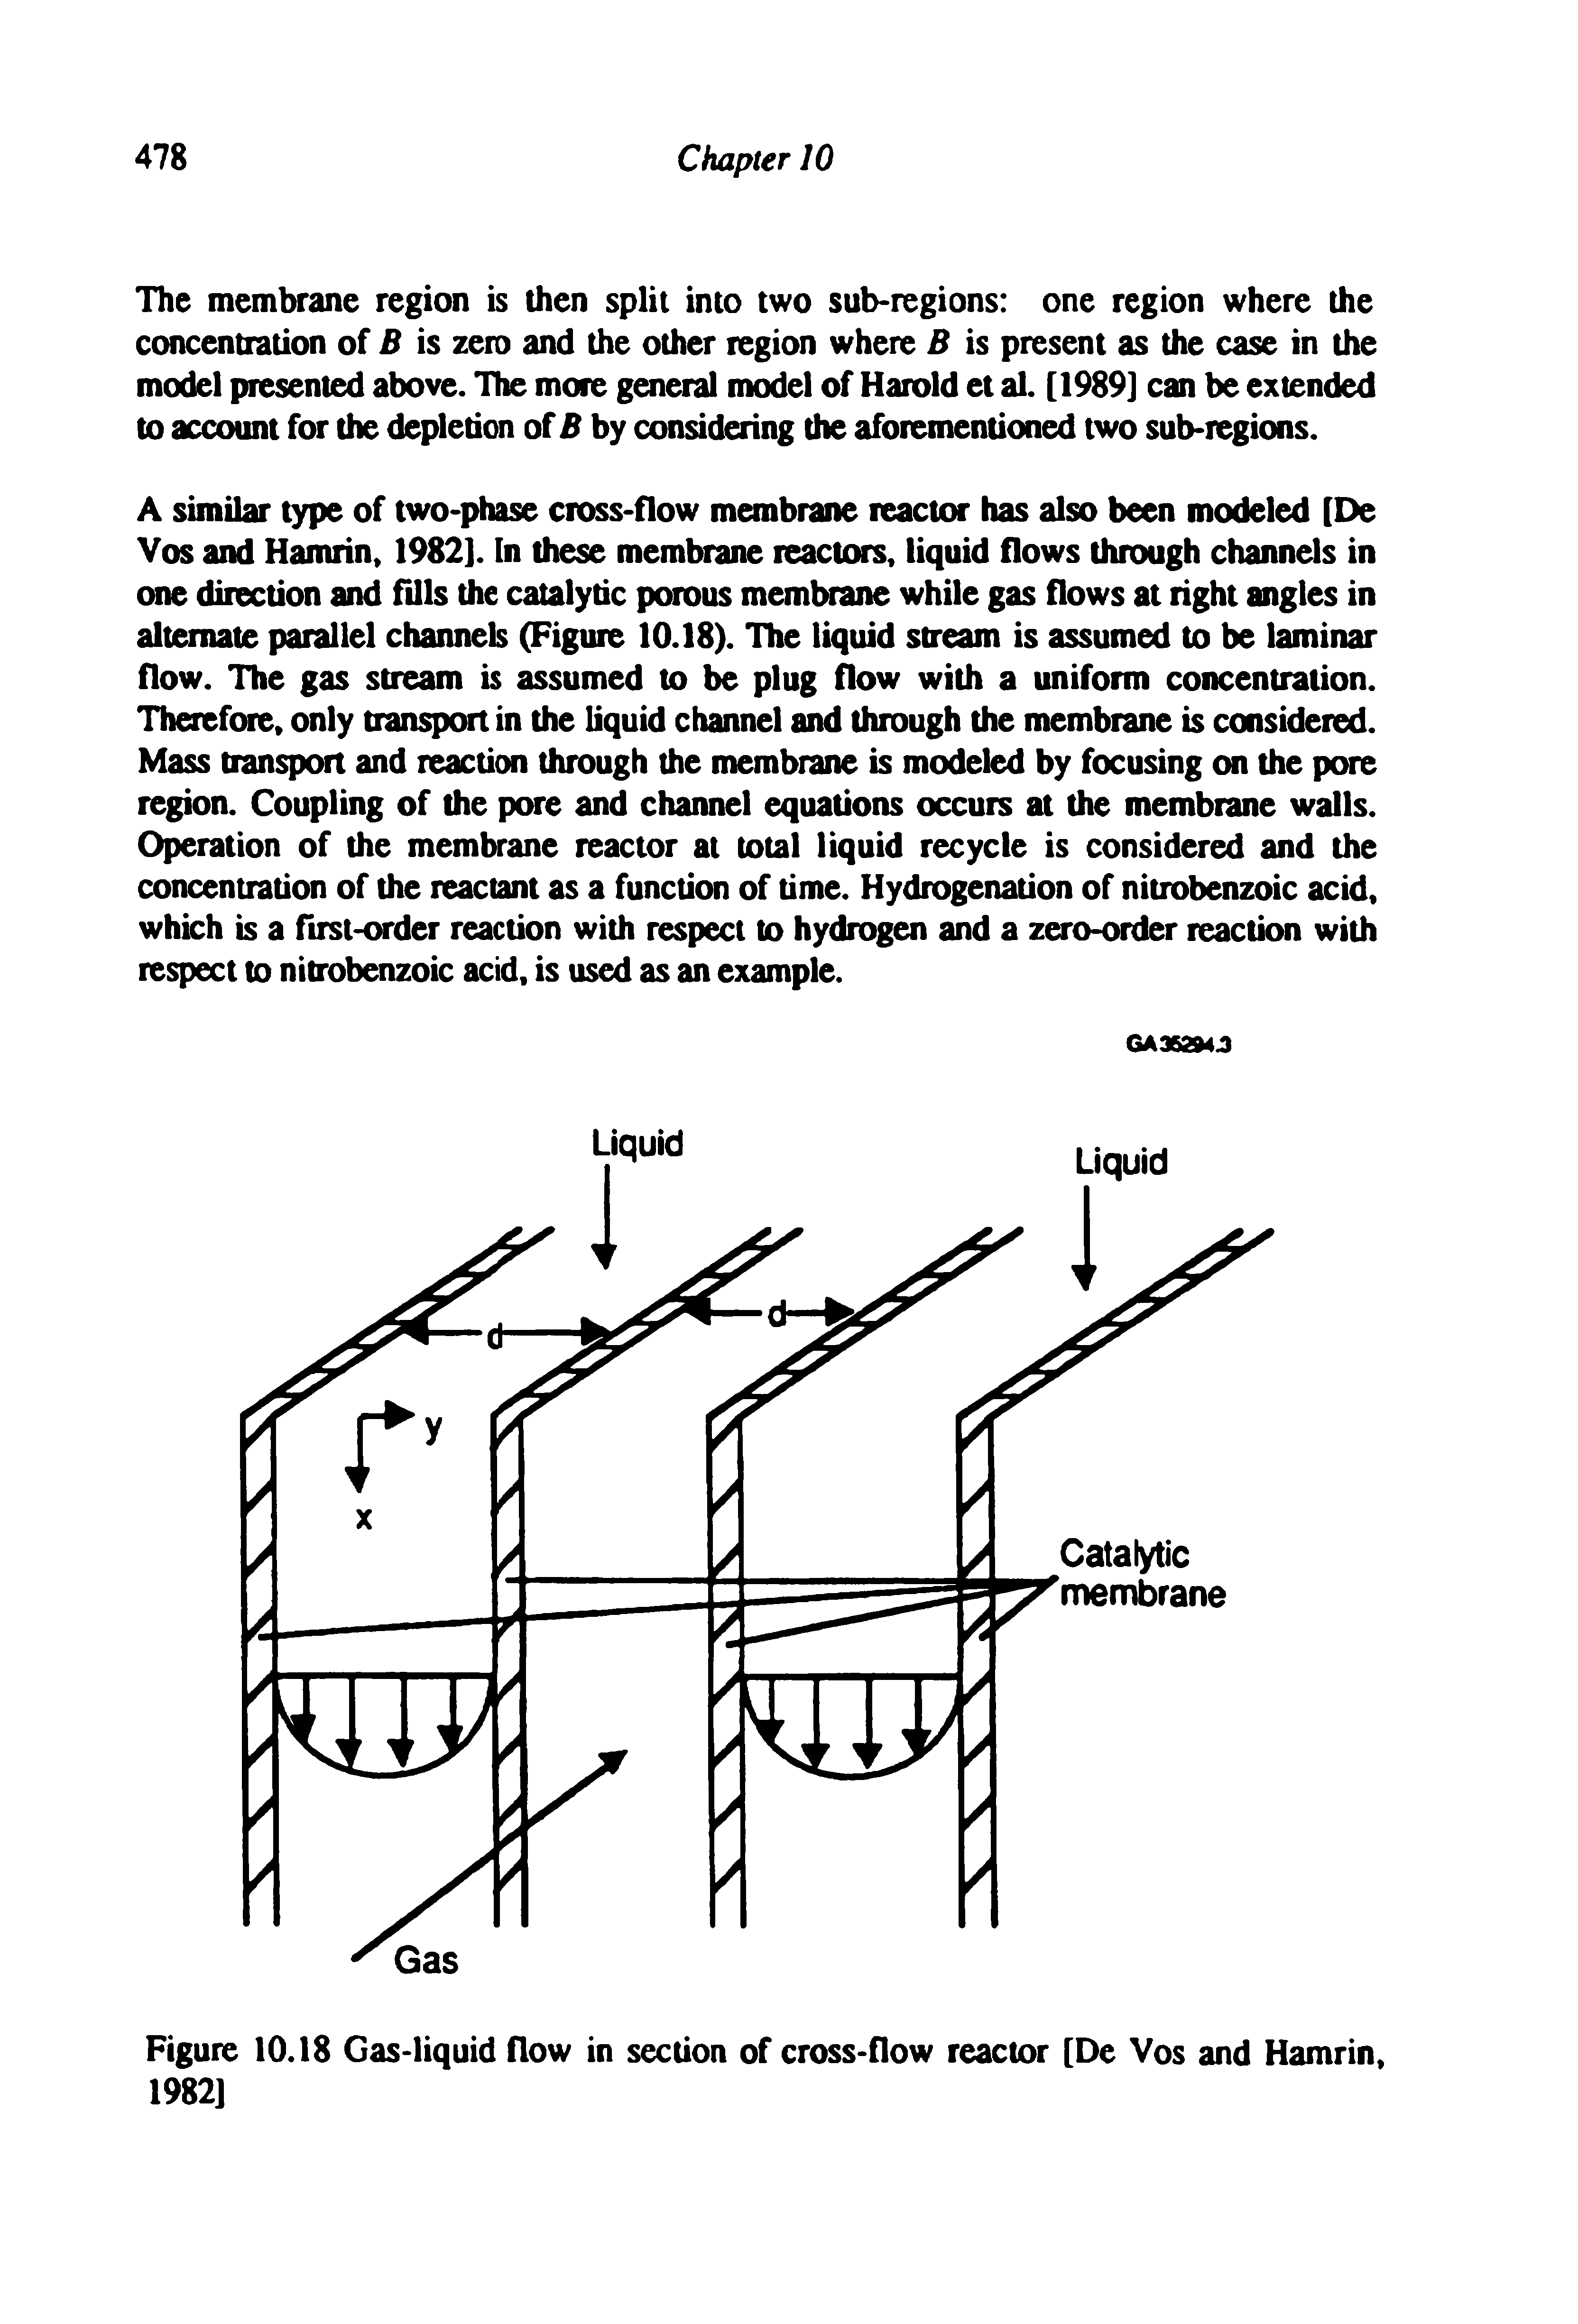 Figure 10.18 Gas-liquid flow in section of cross-flow reactor [De Vos and Hamrin, 1982]...